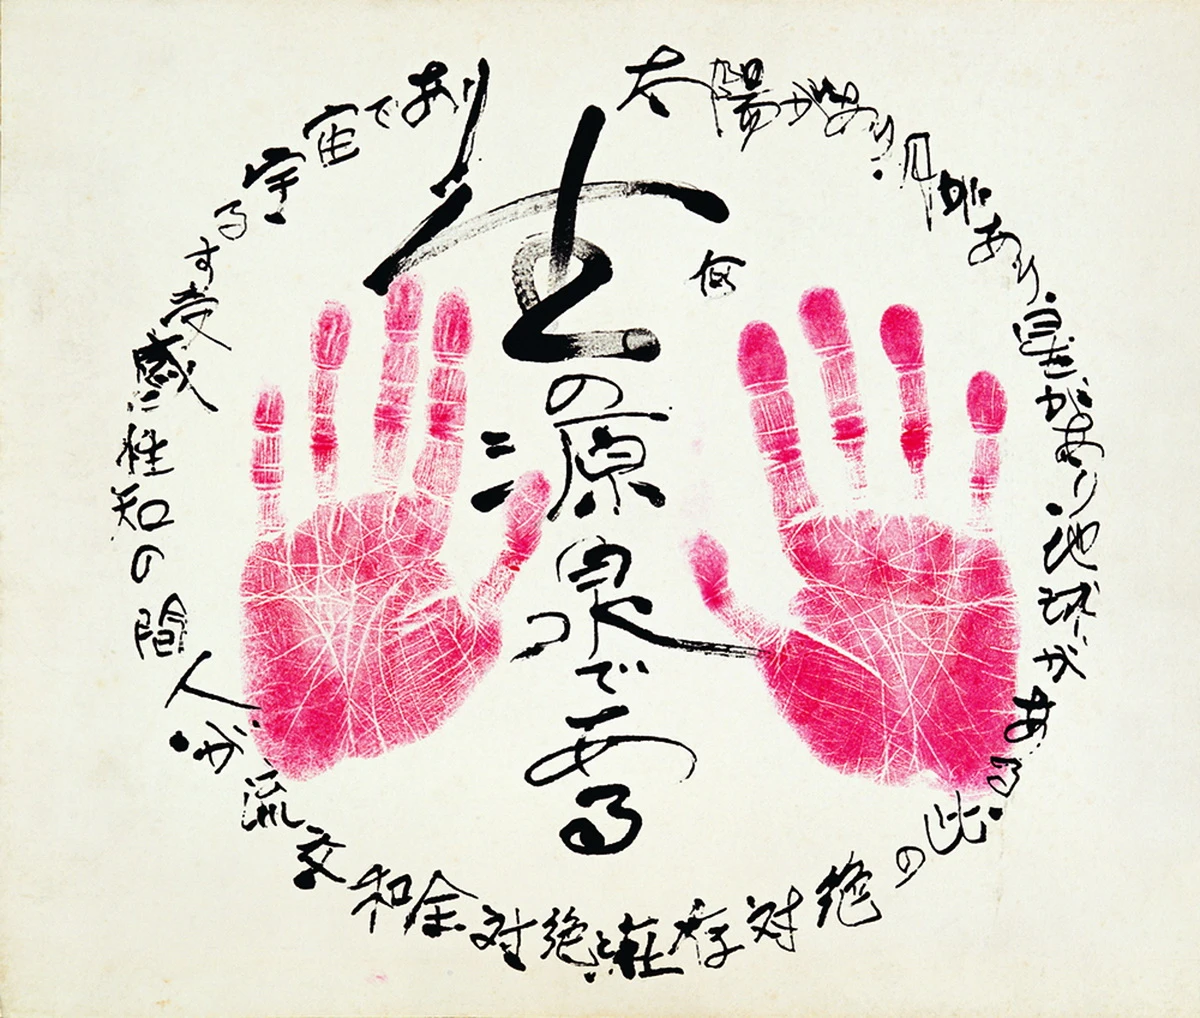 何德來，《何氏的手印》，未紀年，墨、印泥、紙，37×45 cm，臺北市立美術館典藏（編者按：此次回顧展品名為《生之泉源》）-圖片